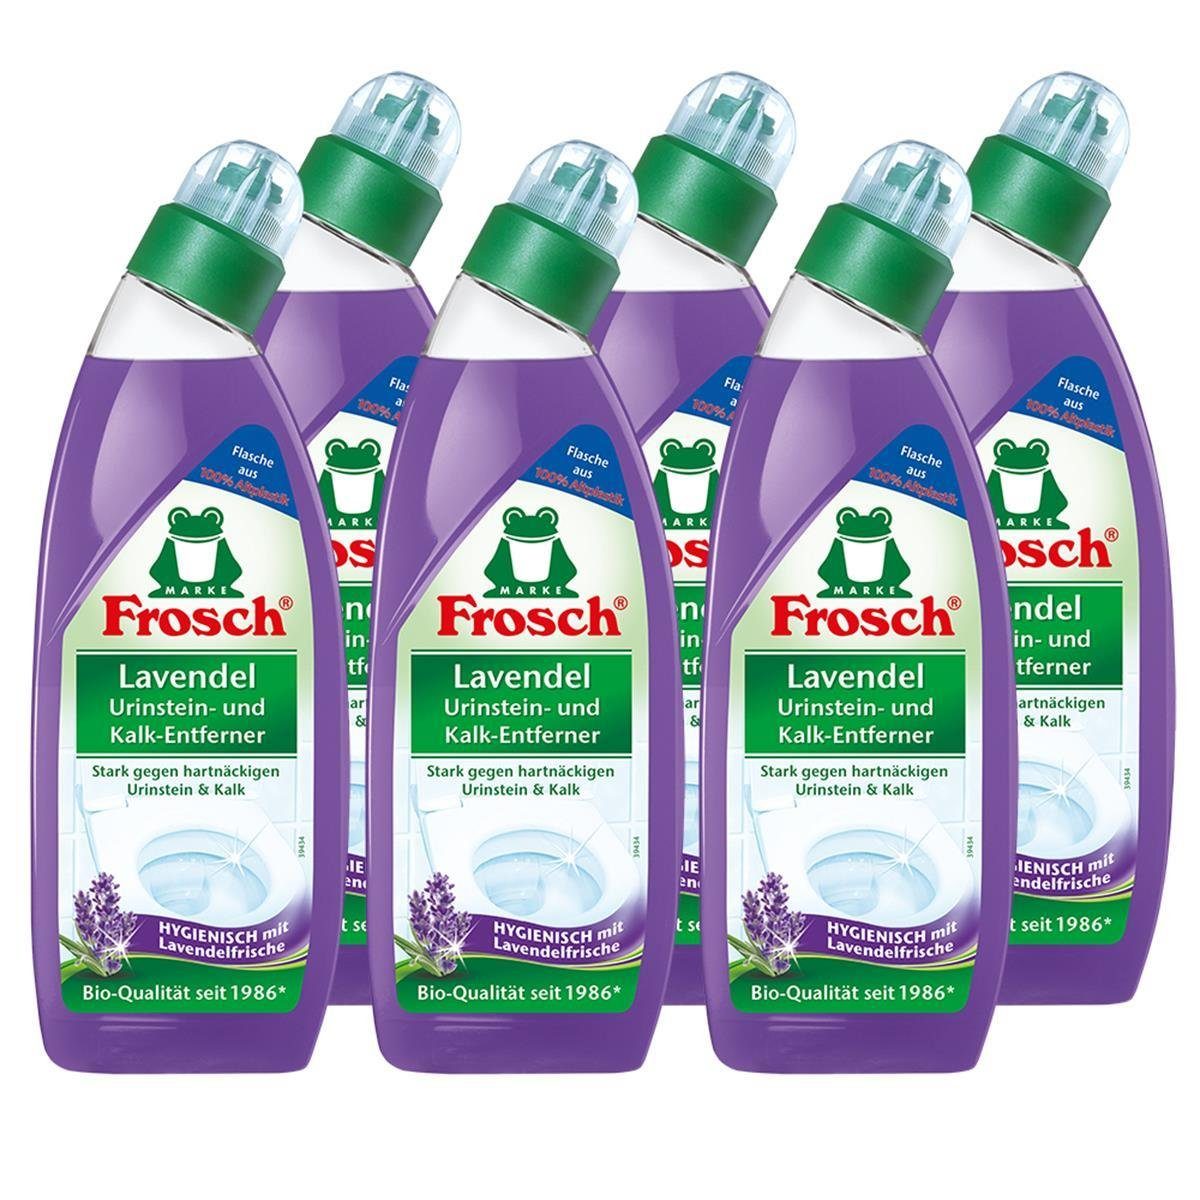 FROSCH 6x Frosch Lavendel Urinstein- und Kalk-Entferner 750 ml - Hygienisch m WC-Reiniger